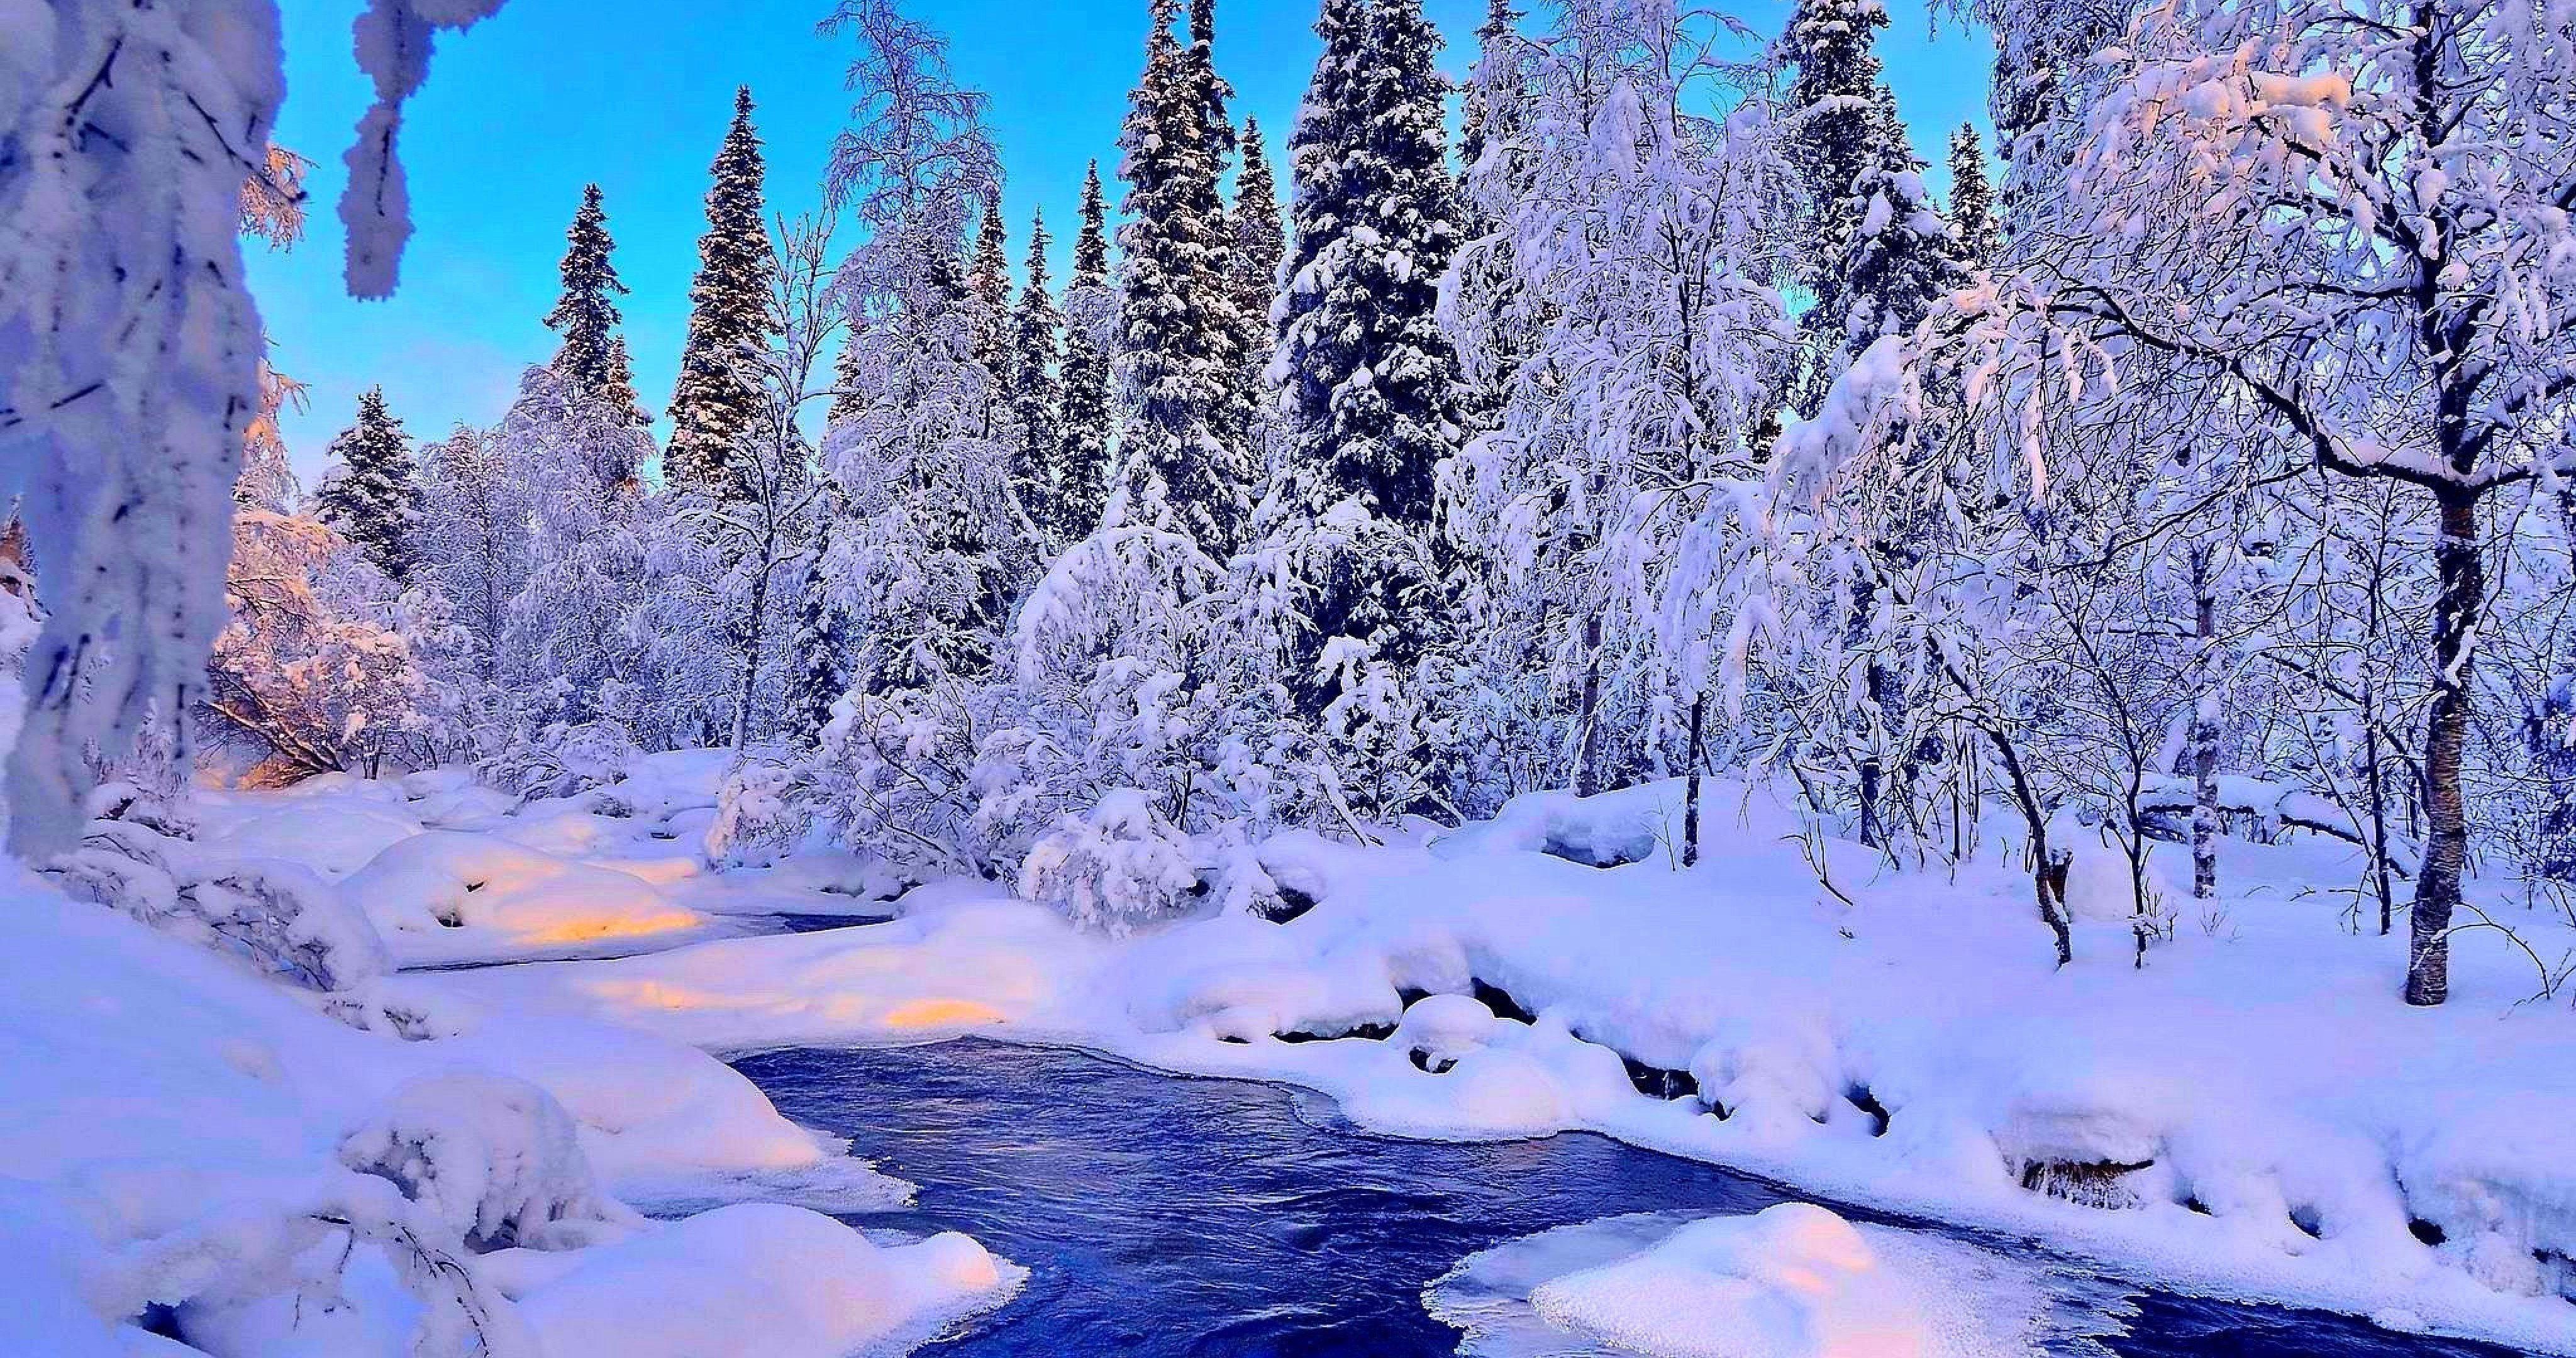 4096x2160 Hình nền mùa đông 4k Dòng sông đáng yêu vào mùa đông Hình nền 4k Ultra HD O